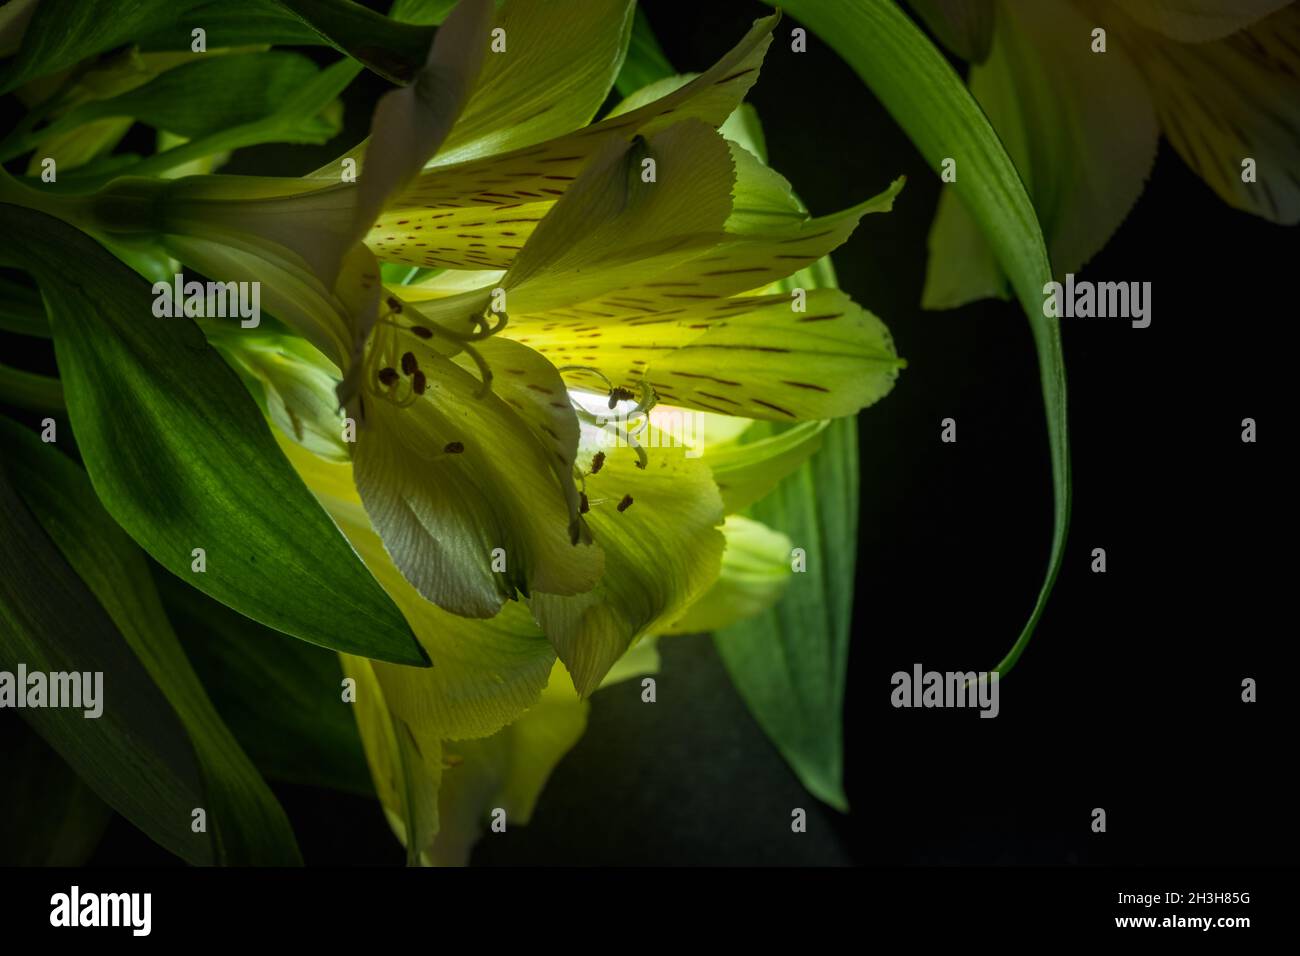 Plana Lay flores amarillas de alstroemeria junto con hojas verdes sobre fondo negro. Espacio para texto en la parte inferior derecha. Foto de stock